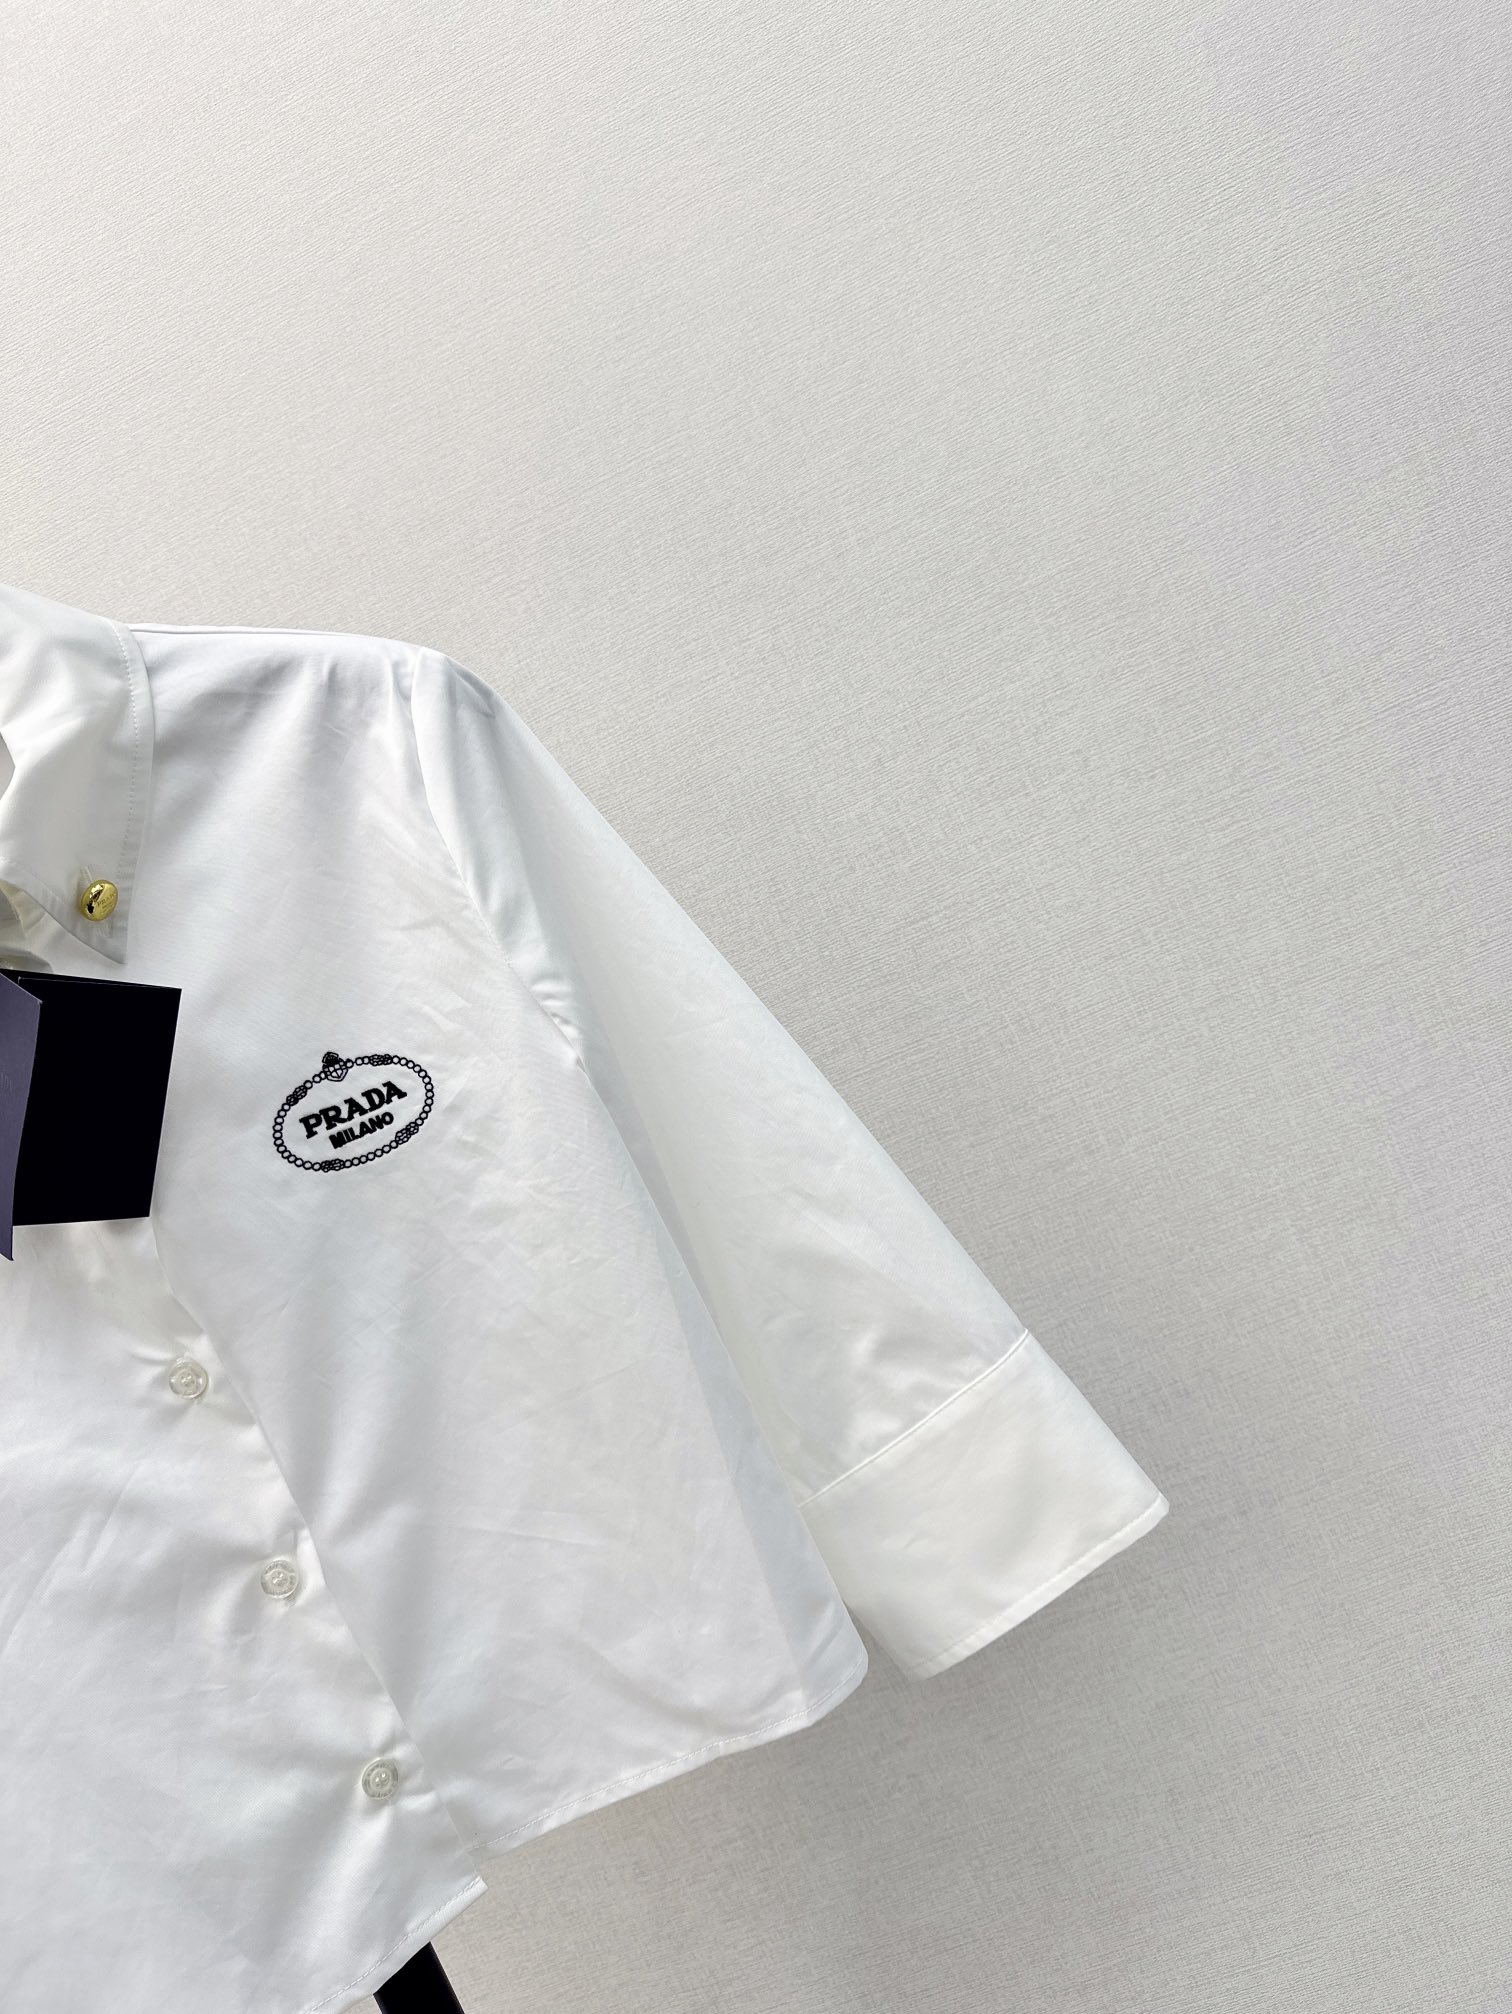 爆单款推荐PD23.4Ss春夏最新款七分袖设计衬衫经典的的蓝白条纹百搭白色系韩剧女主用慵懒风喜欢条纹的不